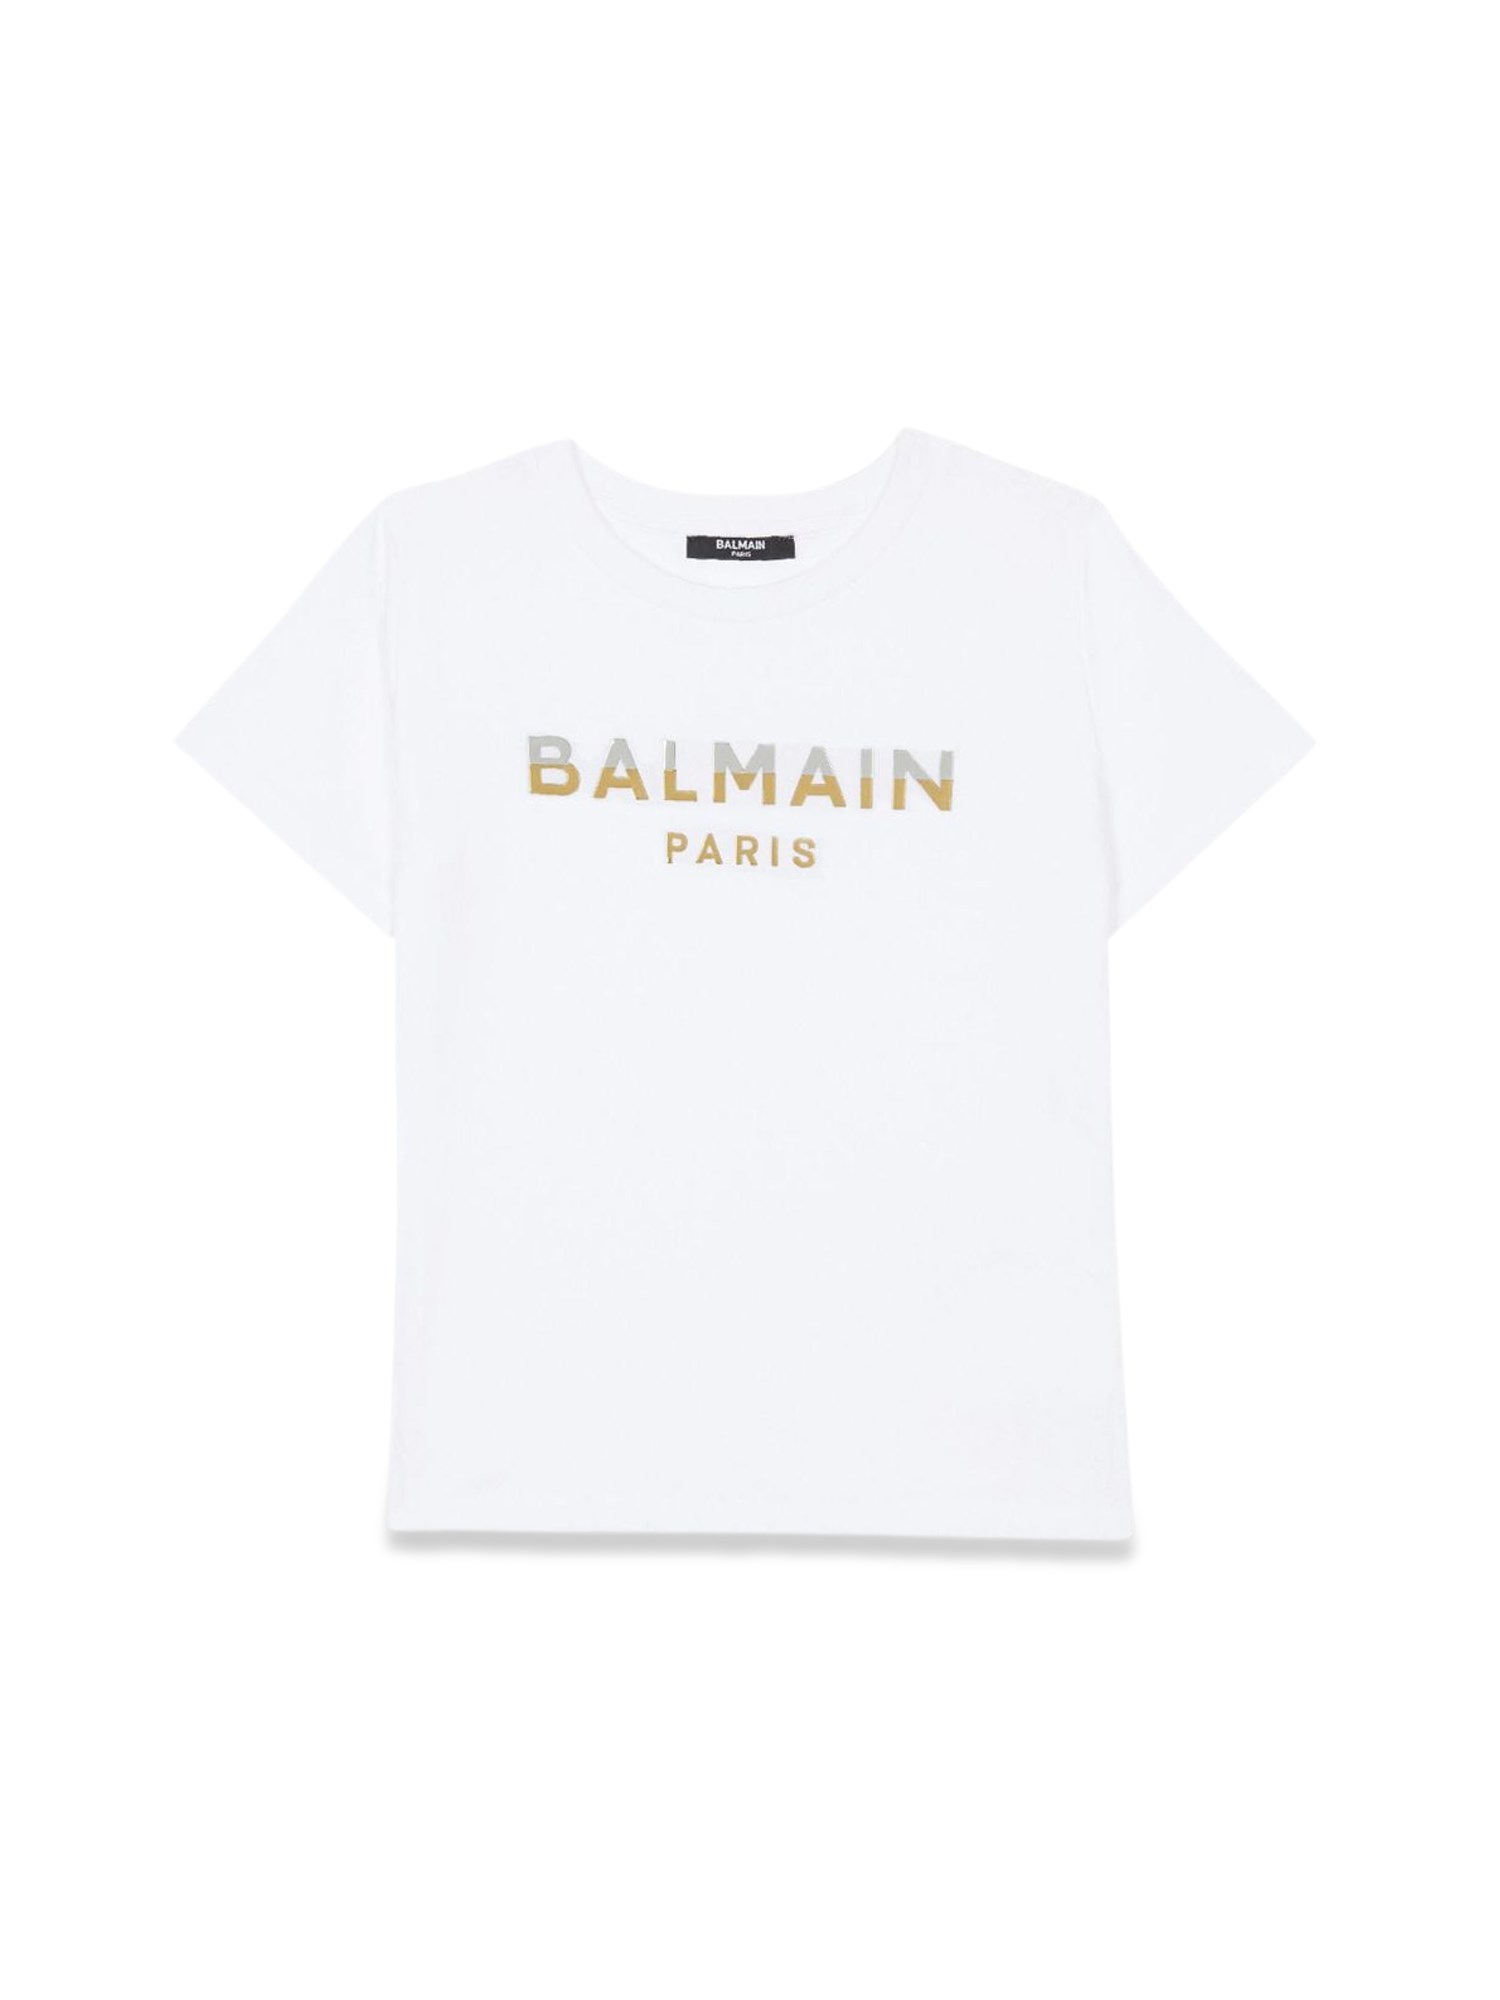 balmain t-shirt/top